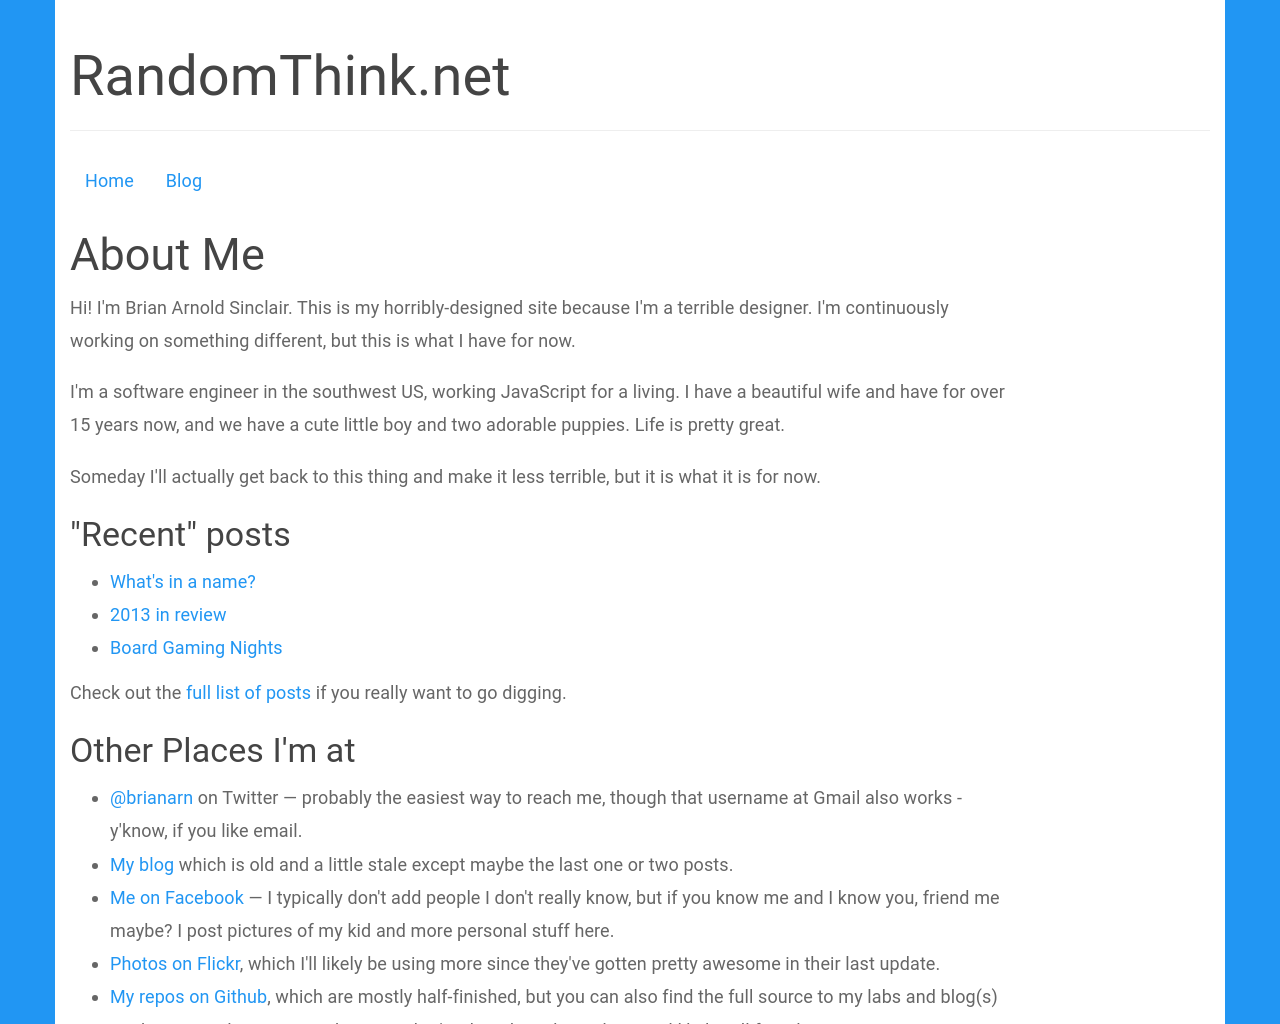 randomthink.net